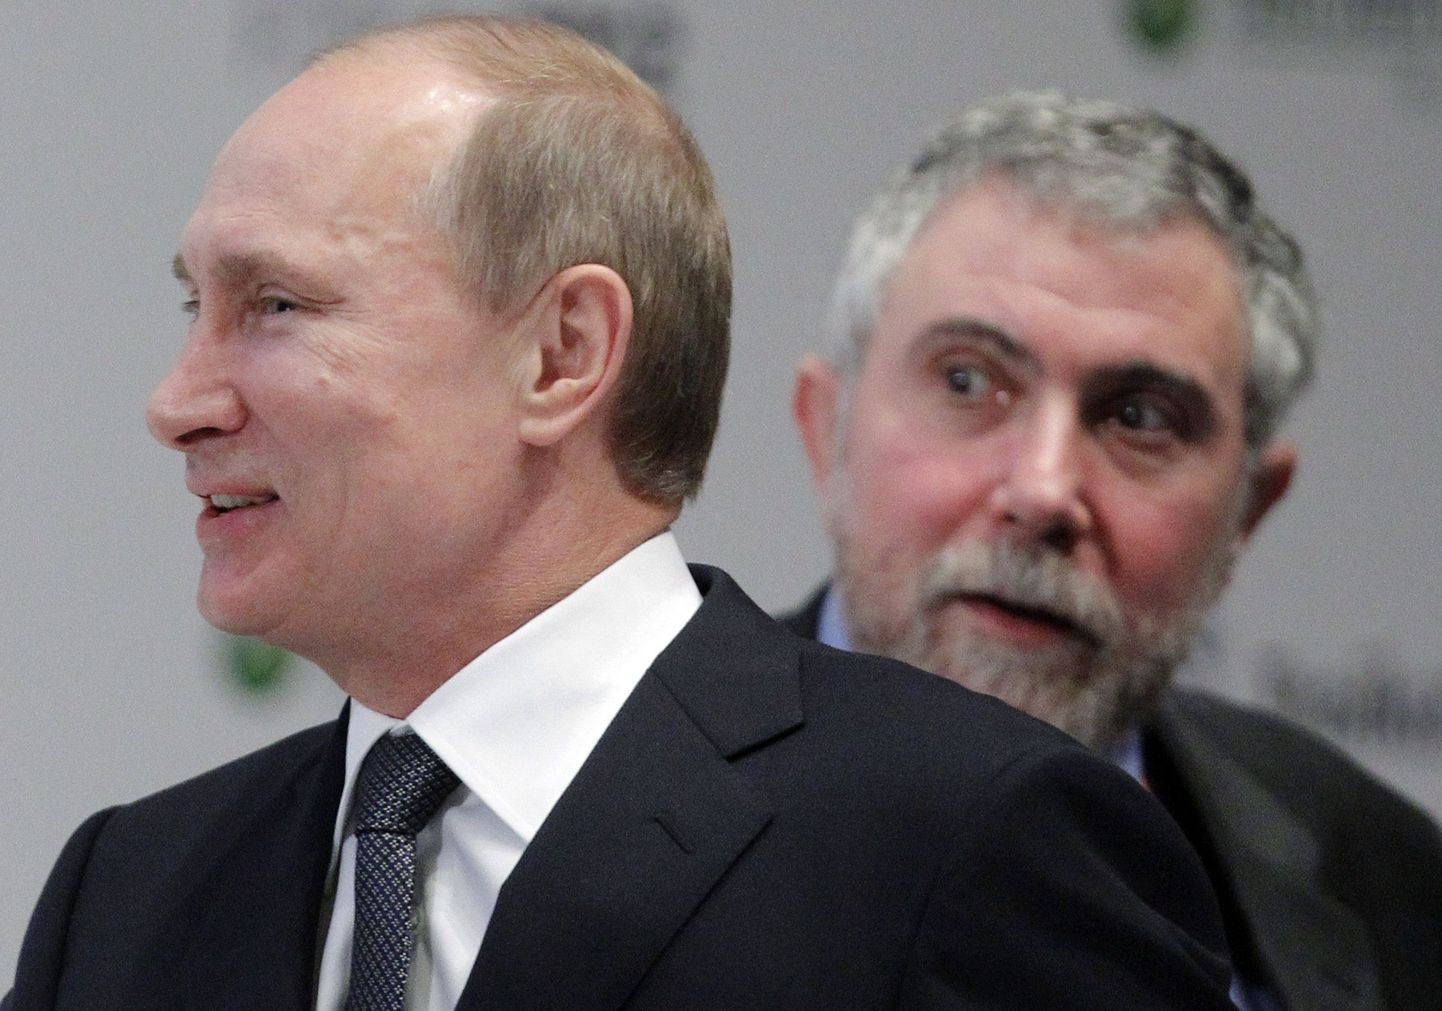 В чьих интересах воюет с Полом Кругманом (справа) президент Ильвес, если он, по Сависаару, работает против курса Эстонии, Европы и Америки? И при чем тут Путин?..